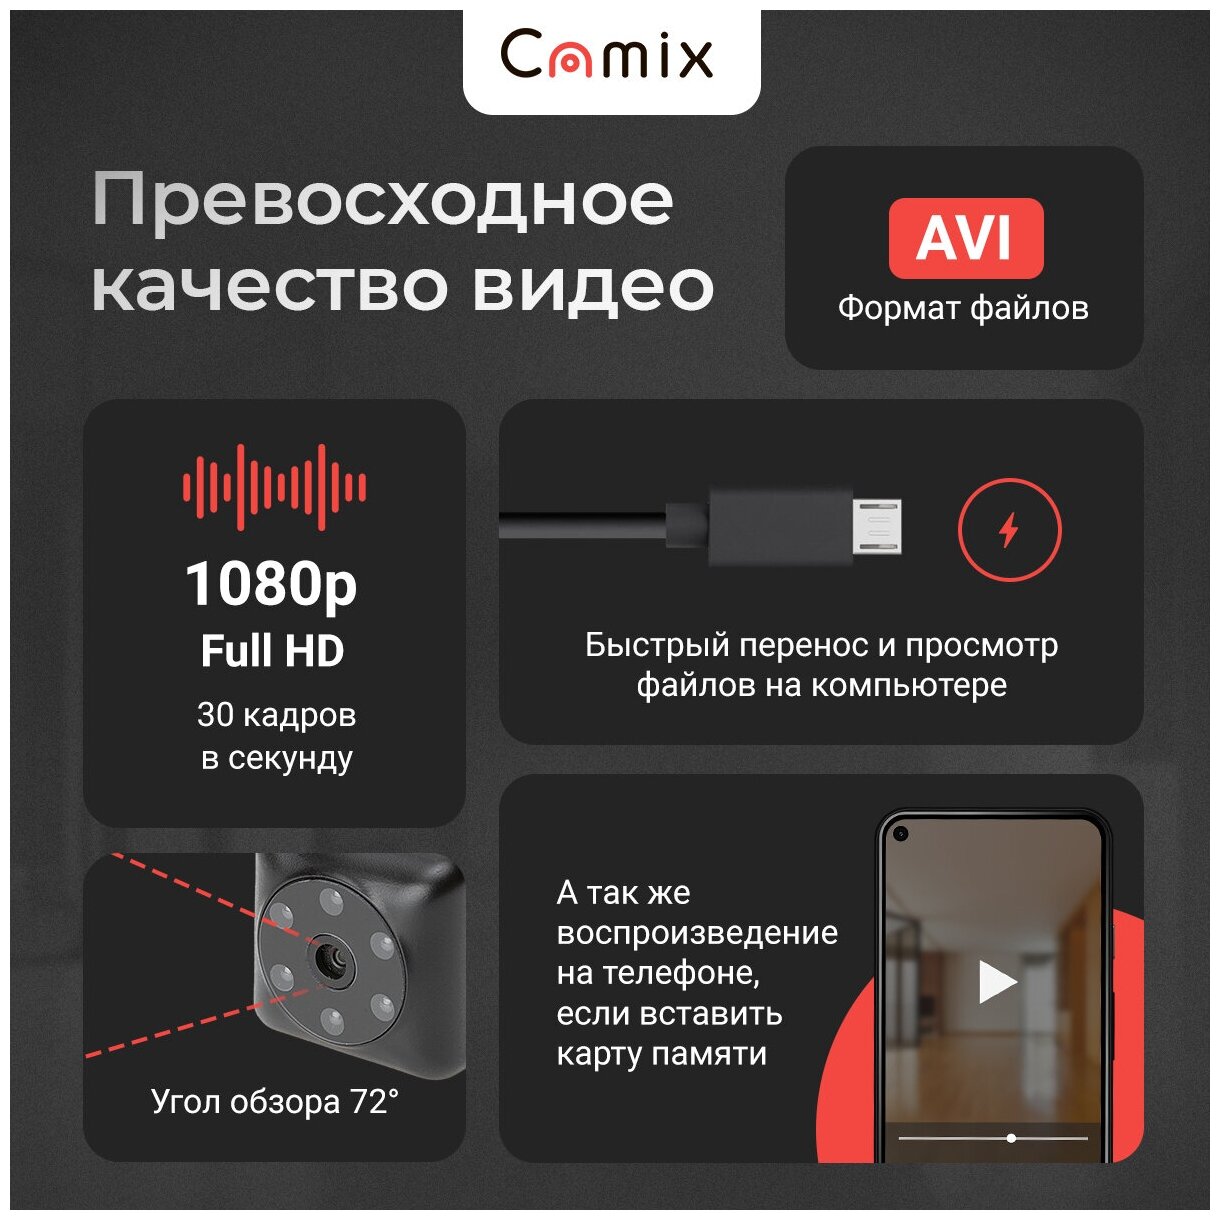 Мини камера скрытая Camix SQ23 с датчиком движения и ночной съёмкой маленькая микро видеокамера видеонаблюдения